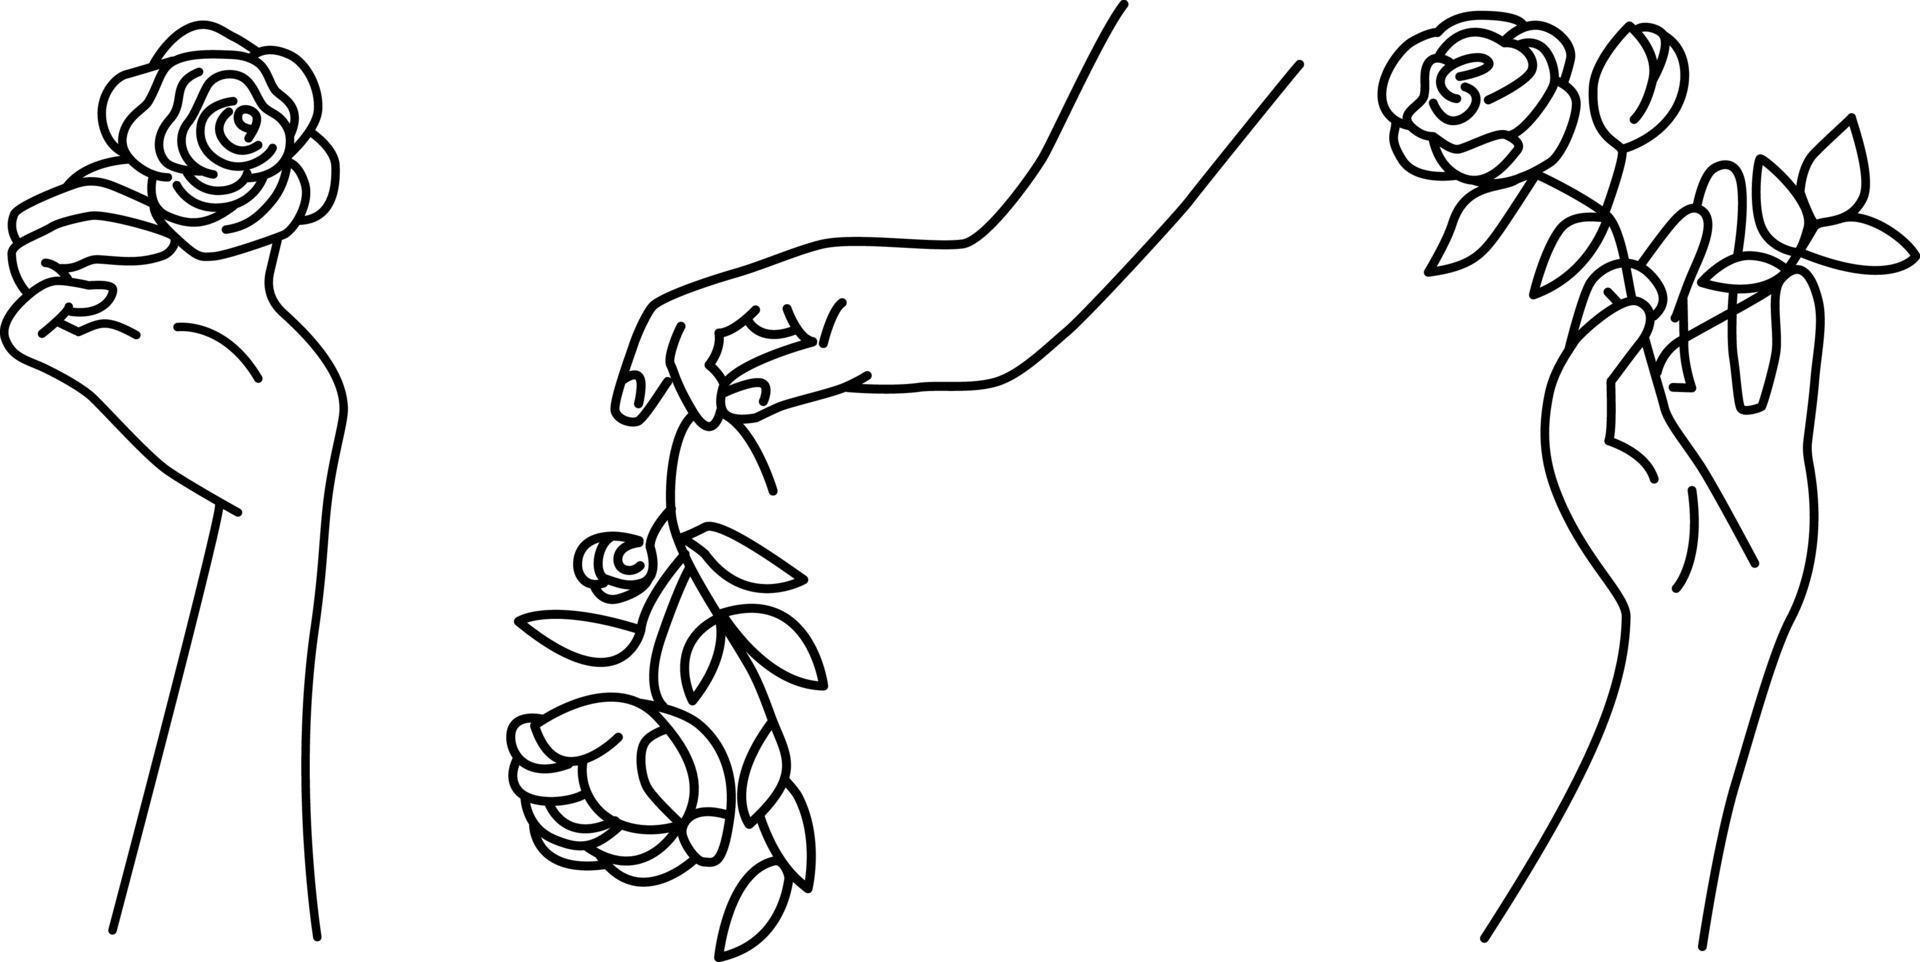 um conjunto de mãos com rosas em estilo linear simples. palmas femininas segurando flores. ilustração vetorial simbólica, decorativa. vetor